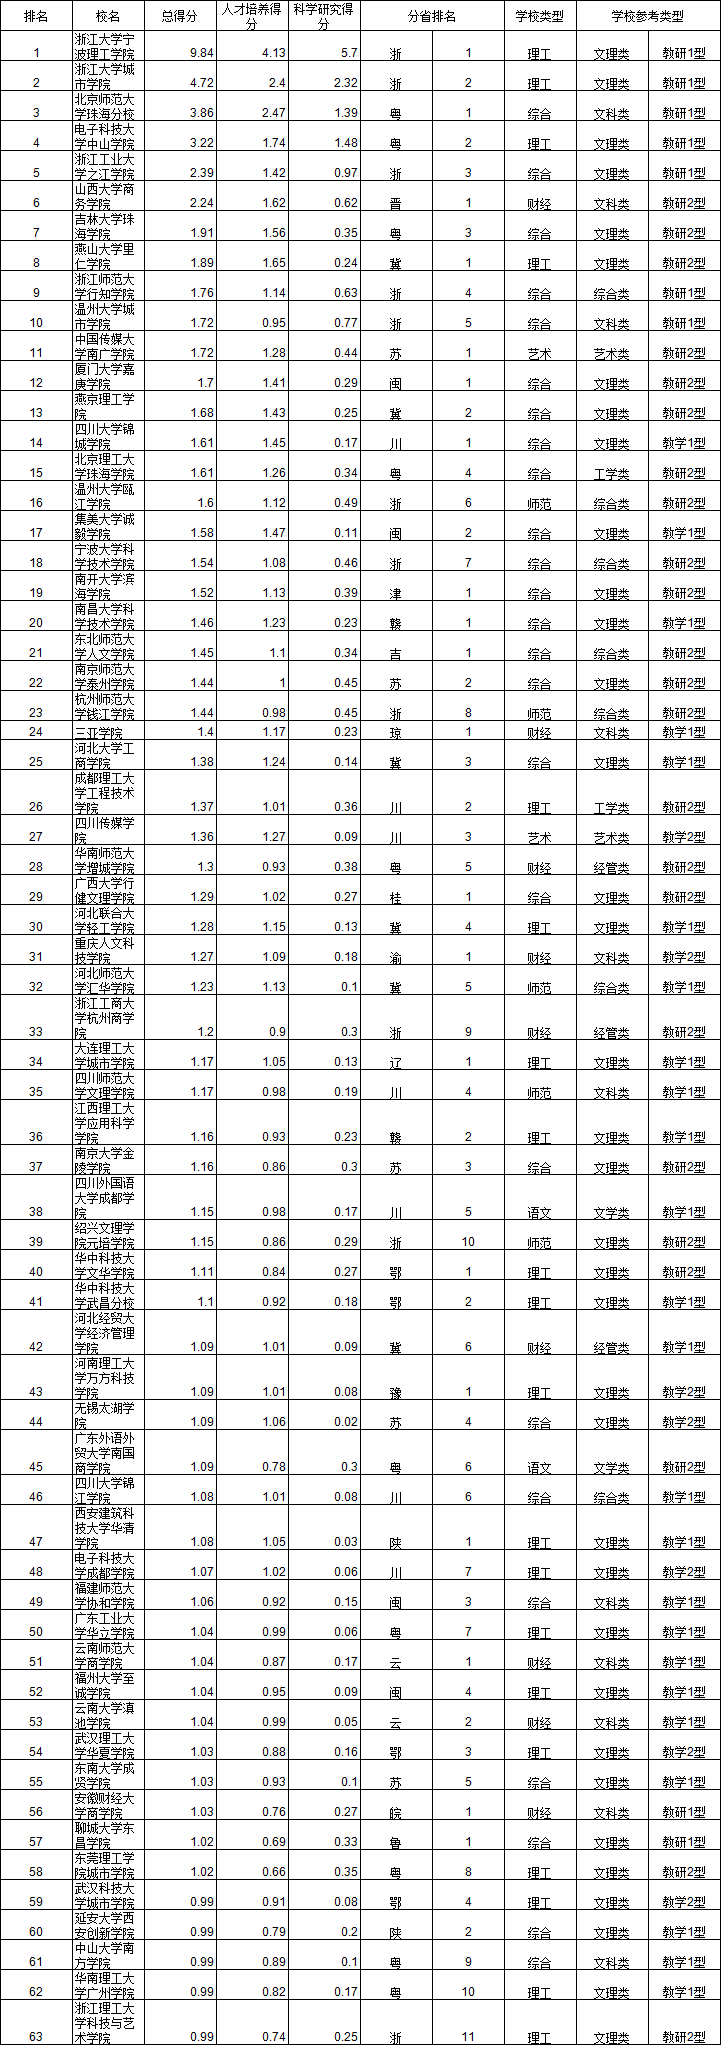 2014中国独立学院排行榜10强